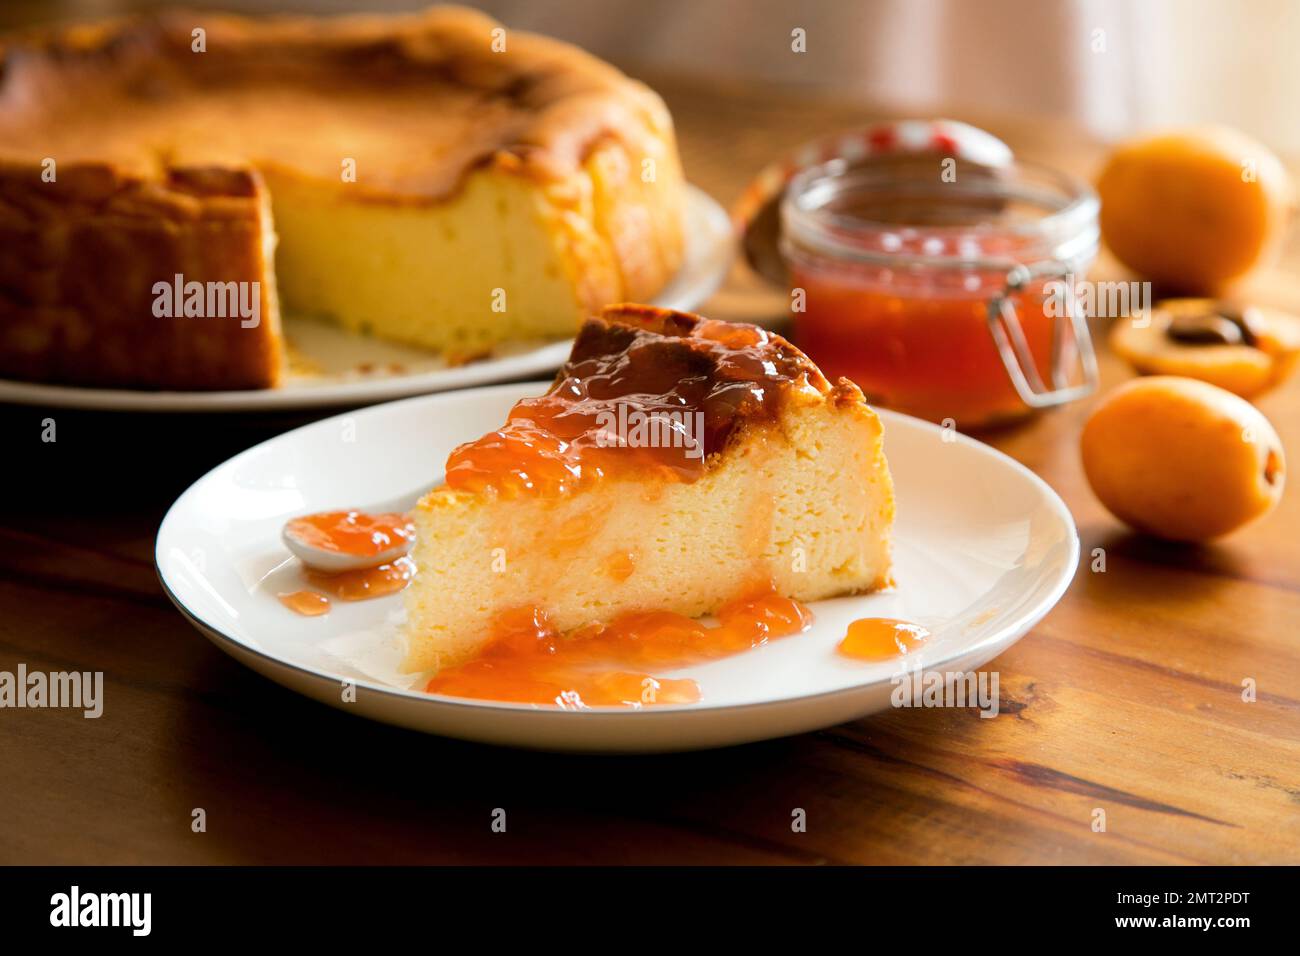 Cheesecake è un dolce dolce composto da uno o più strati. Lo strato principale, e più denso, è costituito da una miscela di formaggio fresco morbido, uova, e. Foto Stock